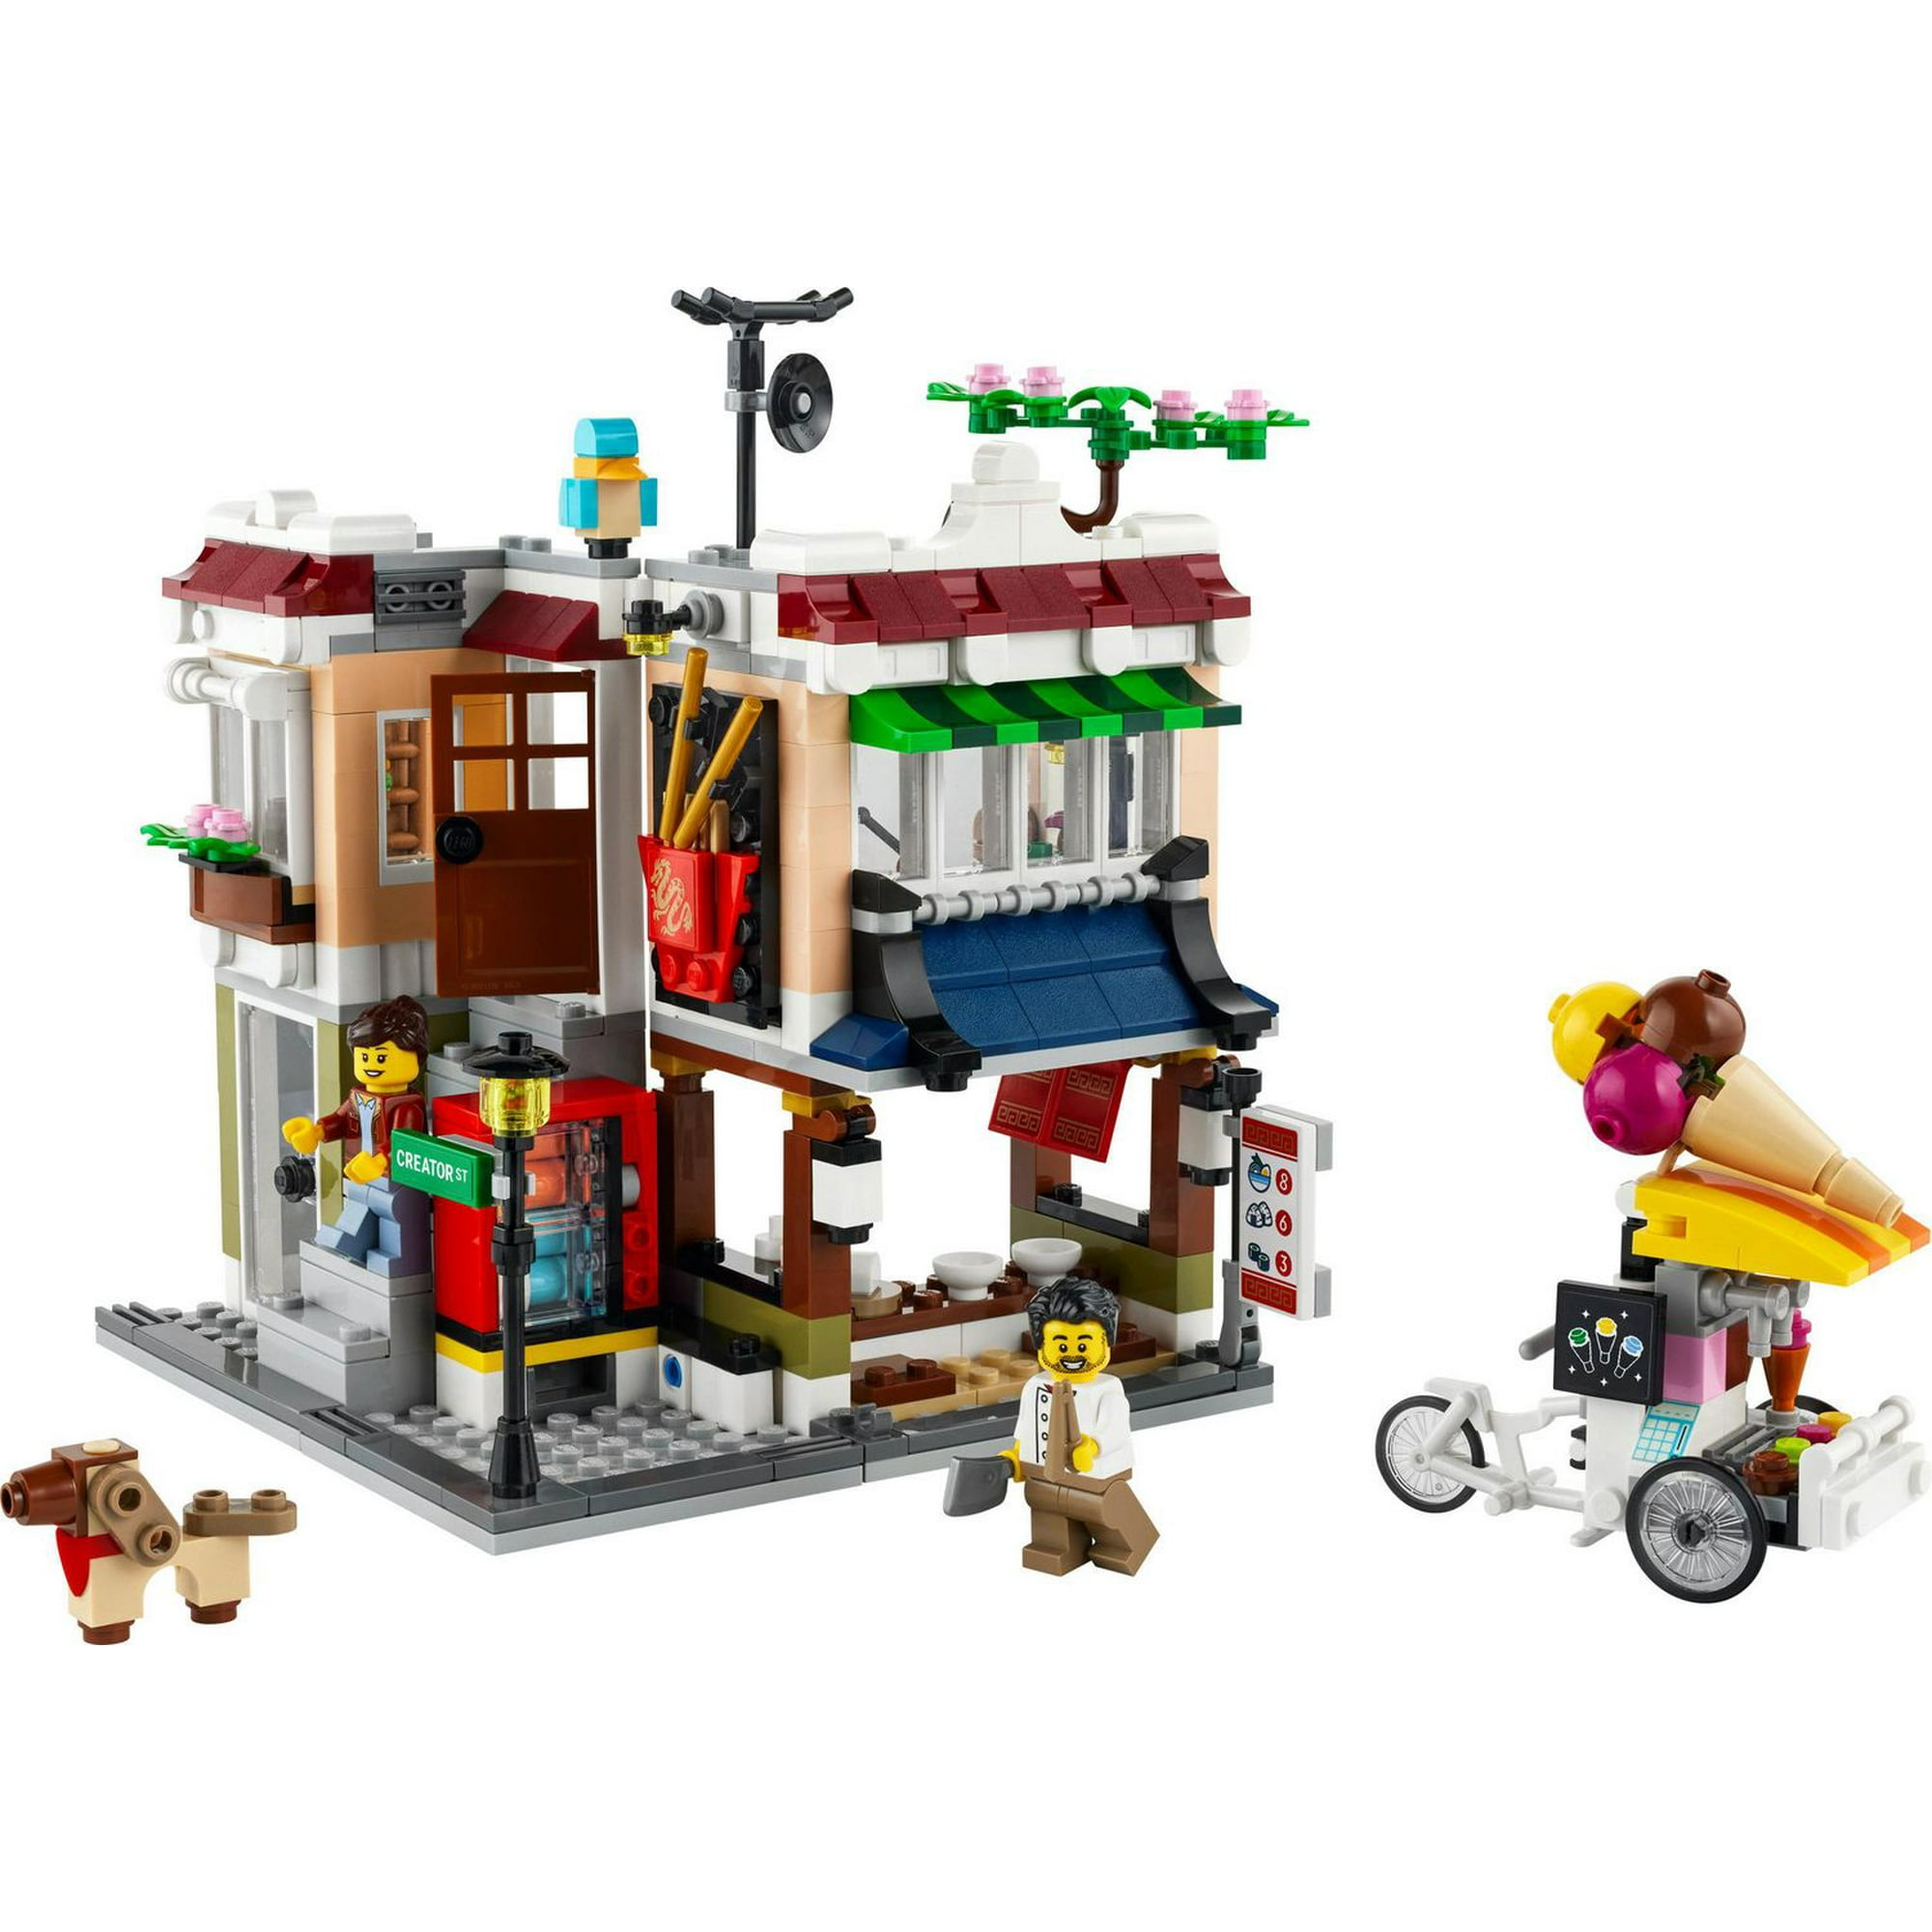 LEGO - 31131 | Creator: Downtown Noodle Shop